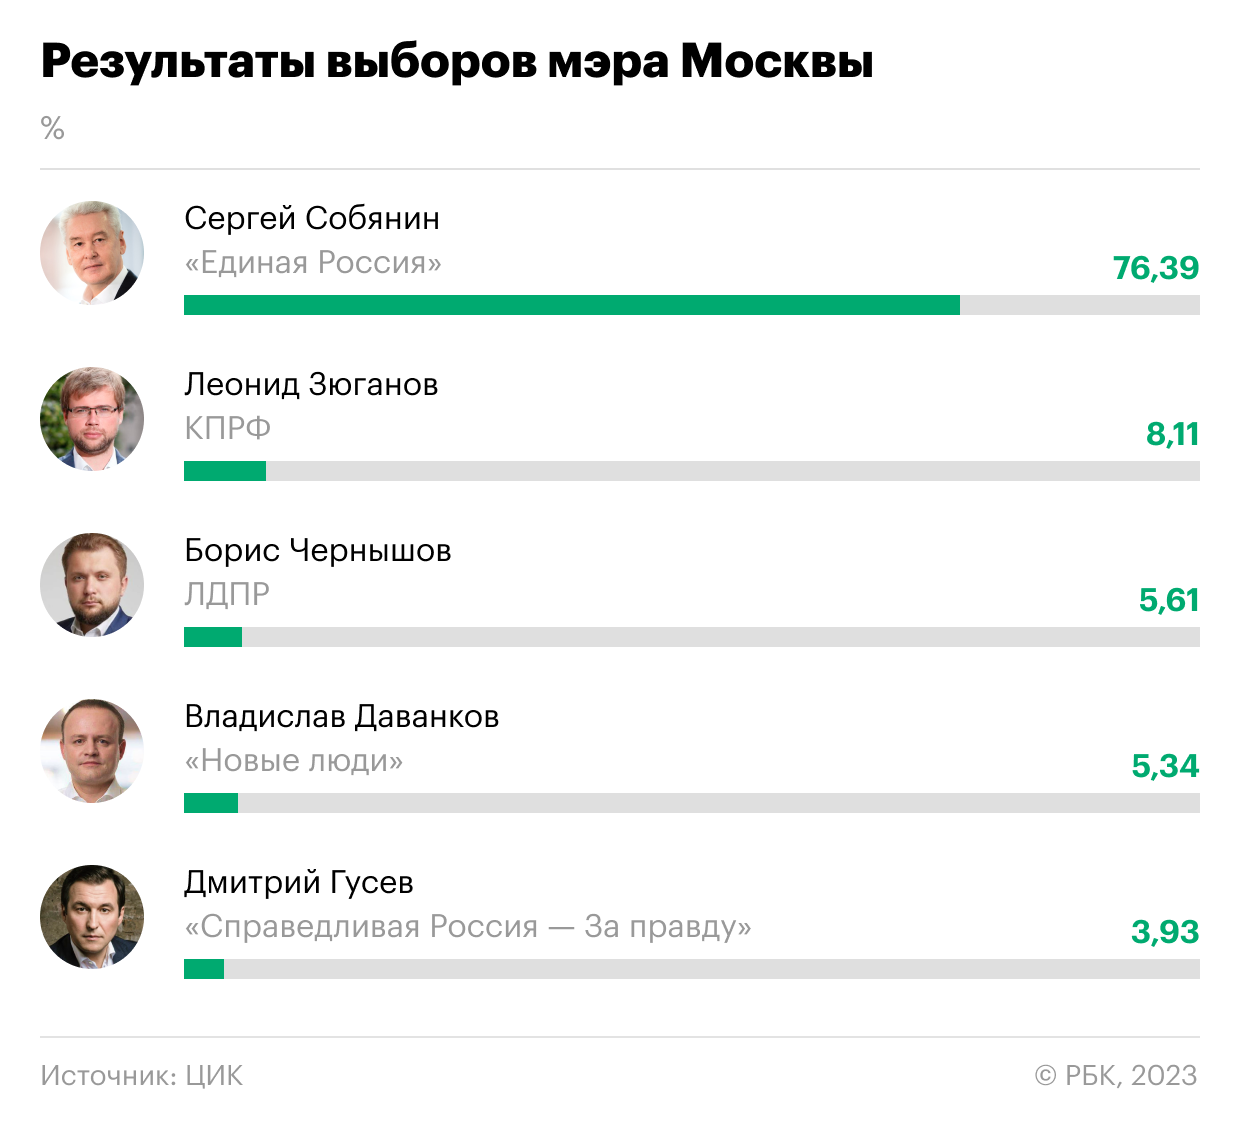 Результаты голосования в москве 2024. Результаты выборов мэра Москвы 2023. Результпты авборов в Росси. Результаты выборов в Москве. Результаты выборы 2023.